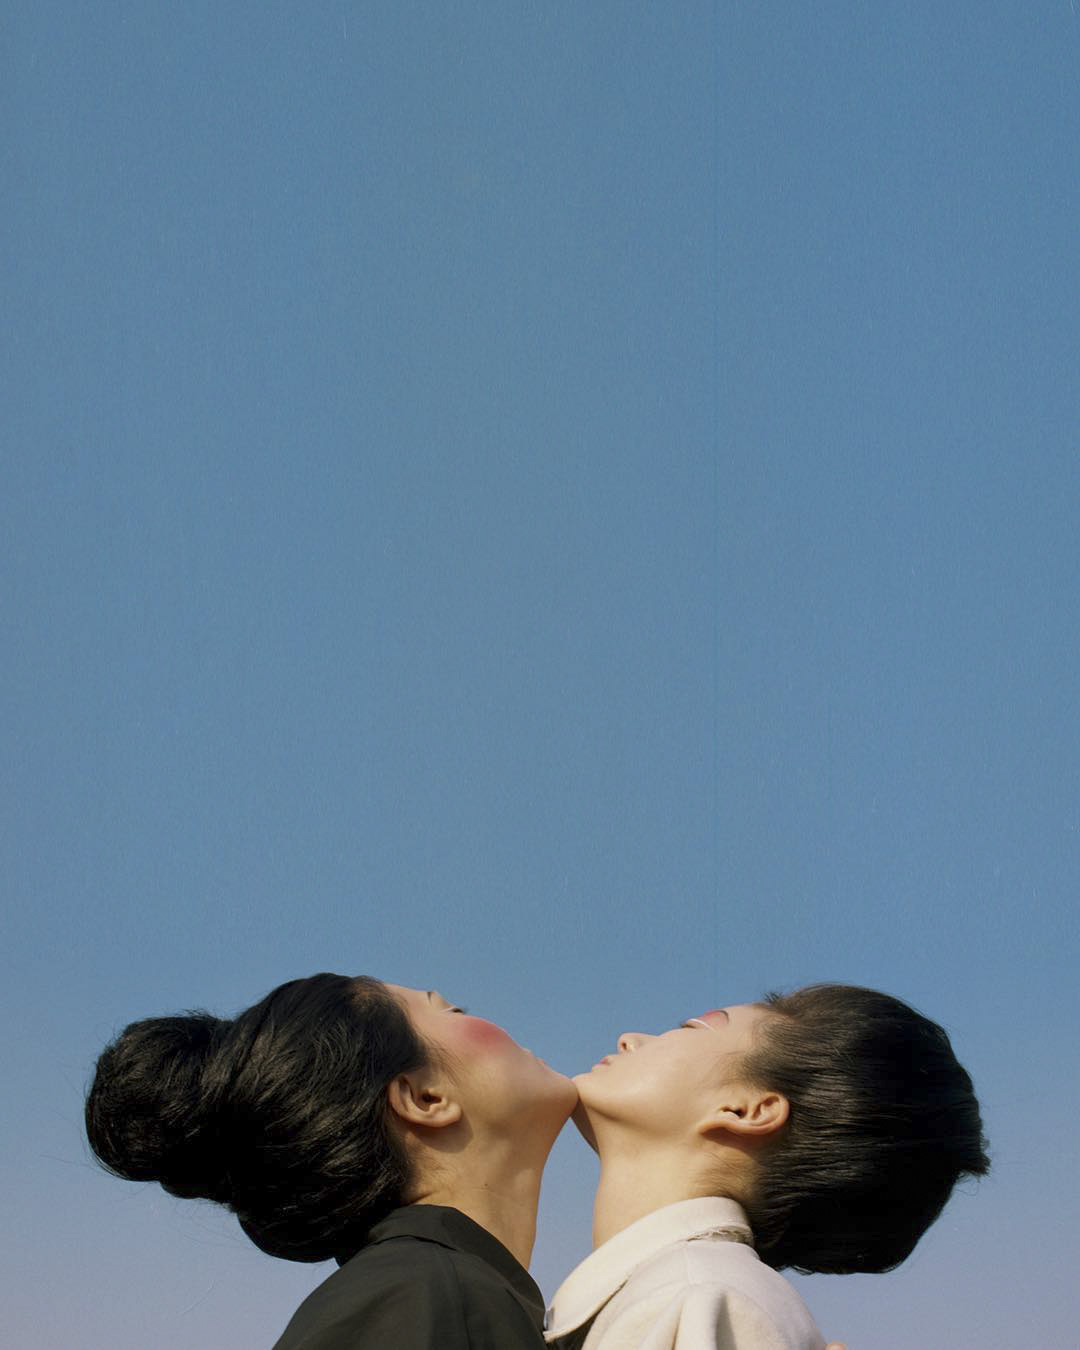 创意质感胶片摄影图片参考素材-韩国摄影师Minhyunwoo作品集欣赏